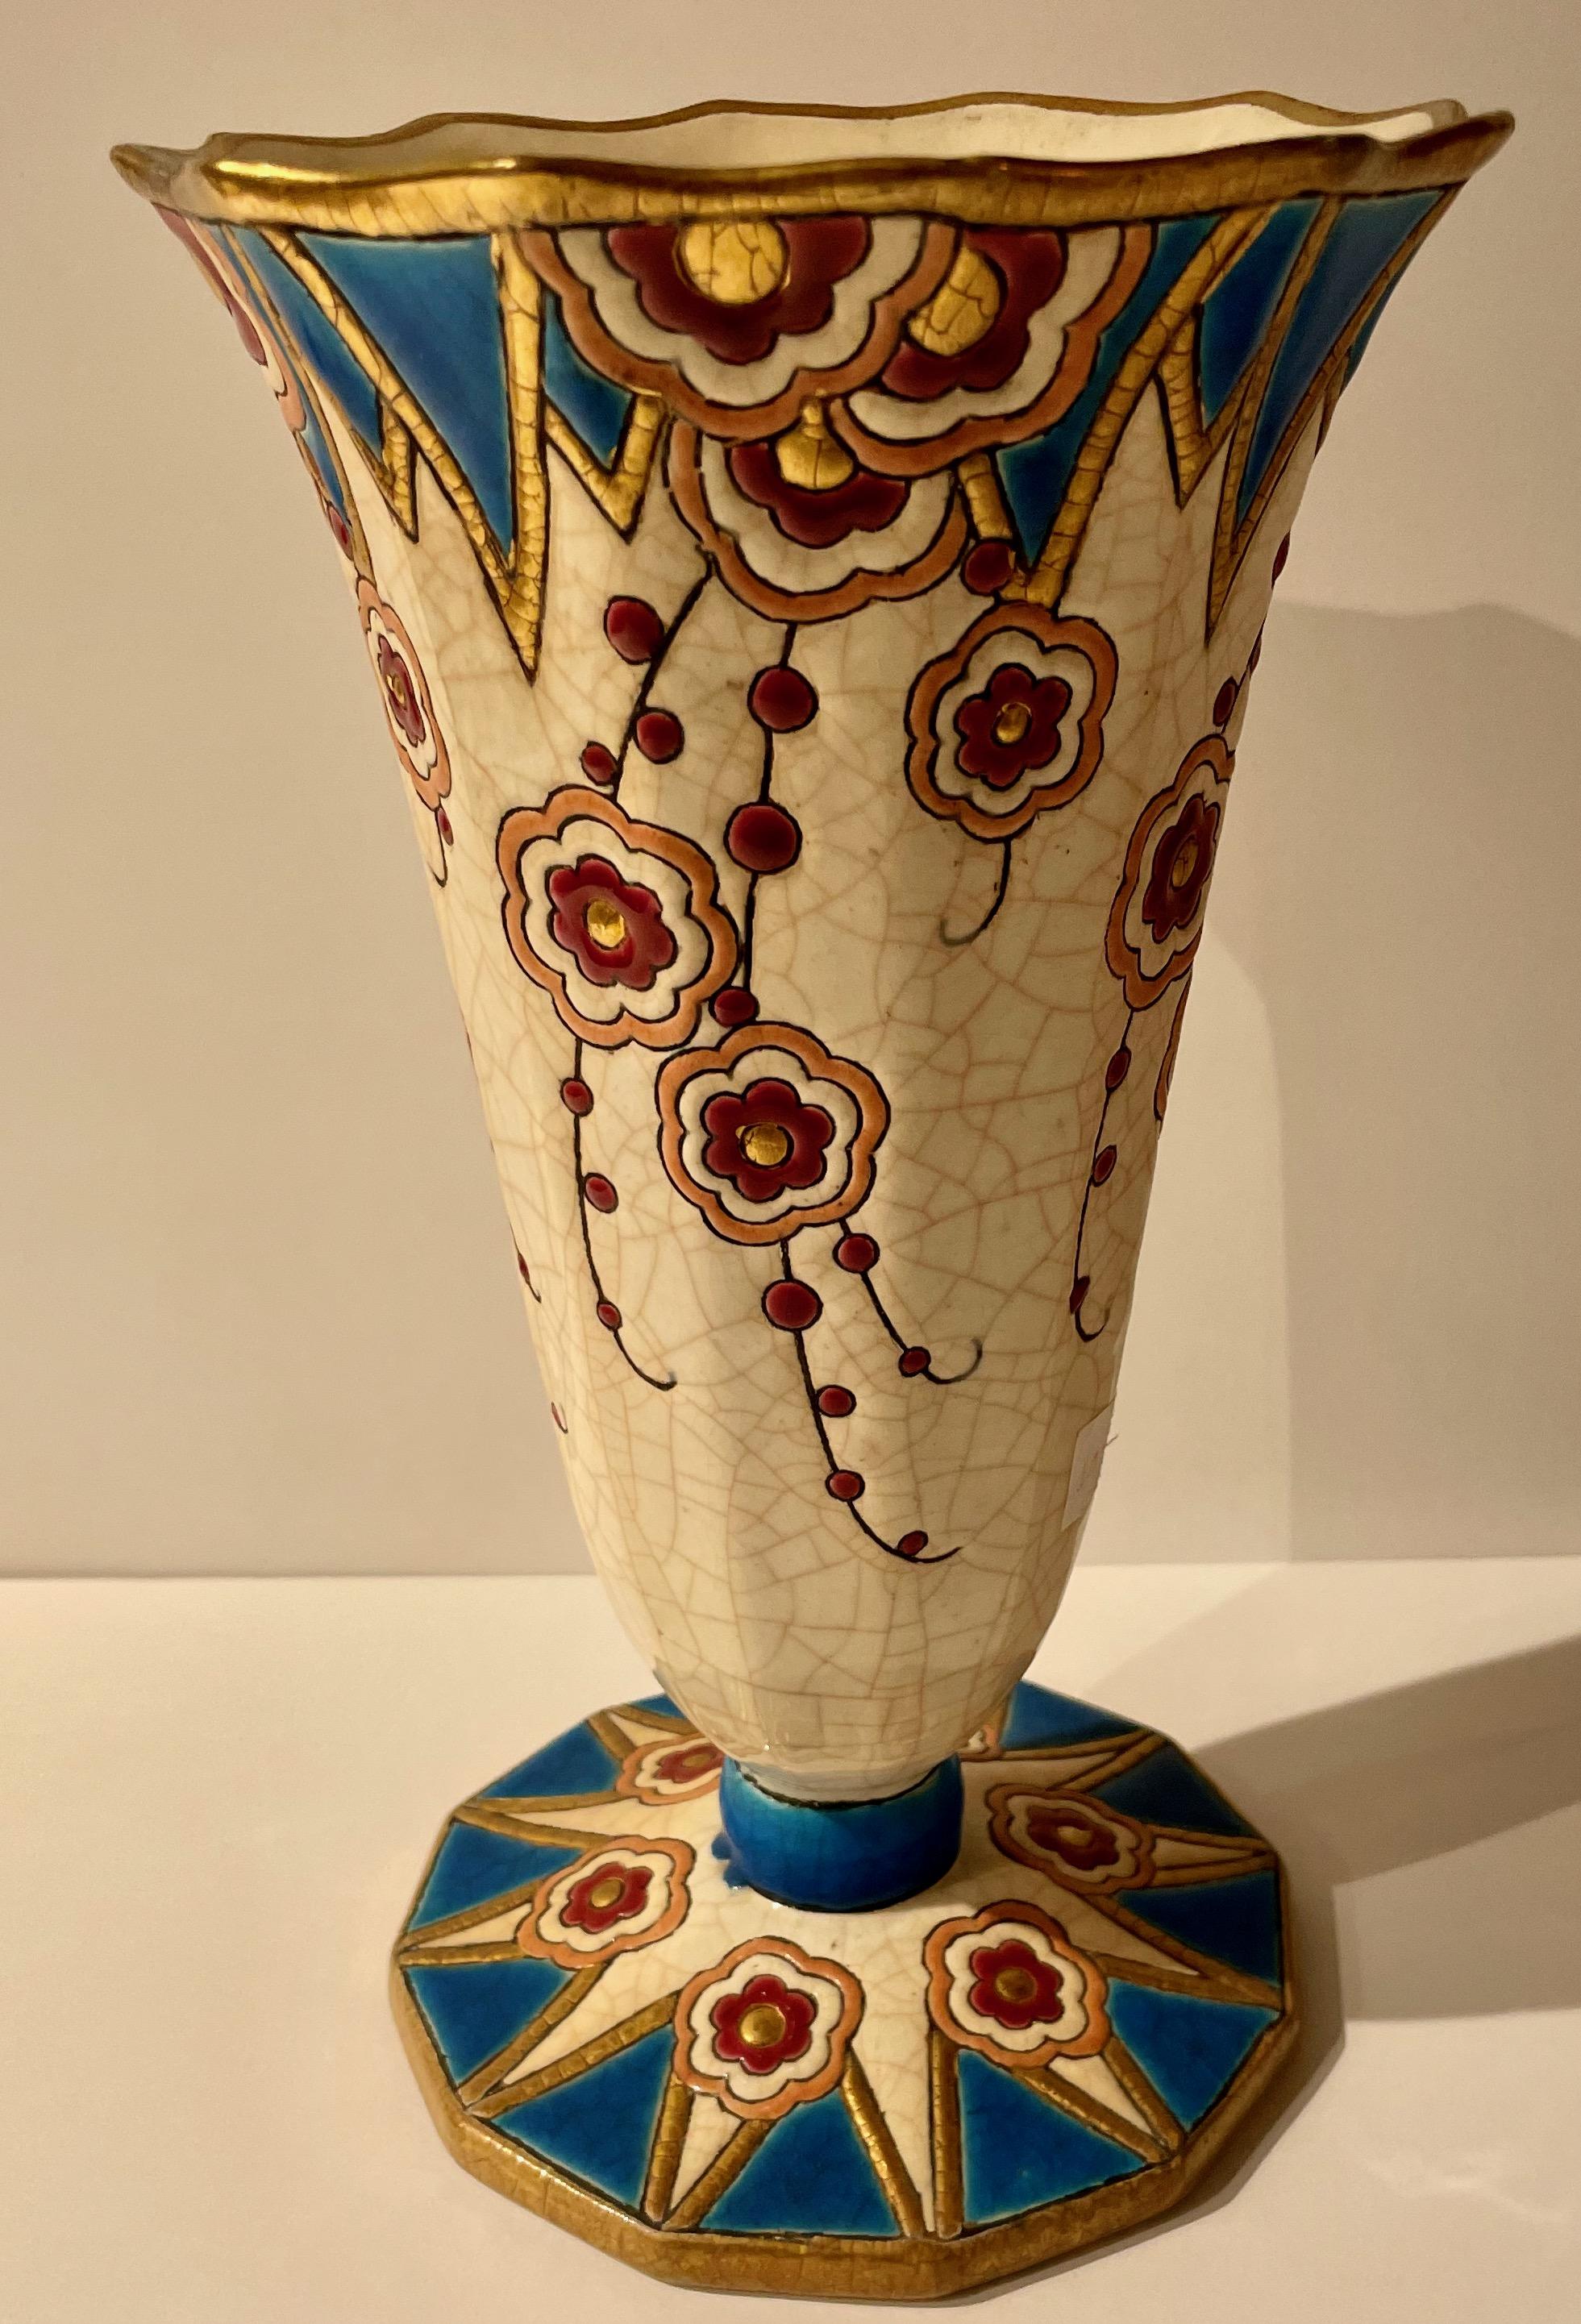 Vase en céramique cloisonnée Longwy Art déco français. Une couleur étonnante avec une base facettée avec des gouttelettes circulaires bleues et dorées entrecoupées tout au long du design du vase. Des détails dorés autour de la base et de la partie